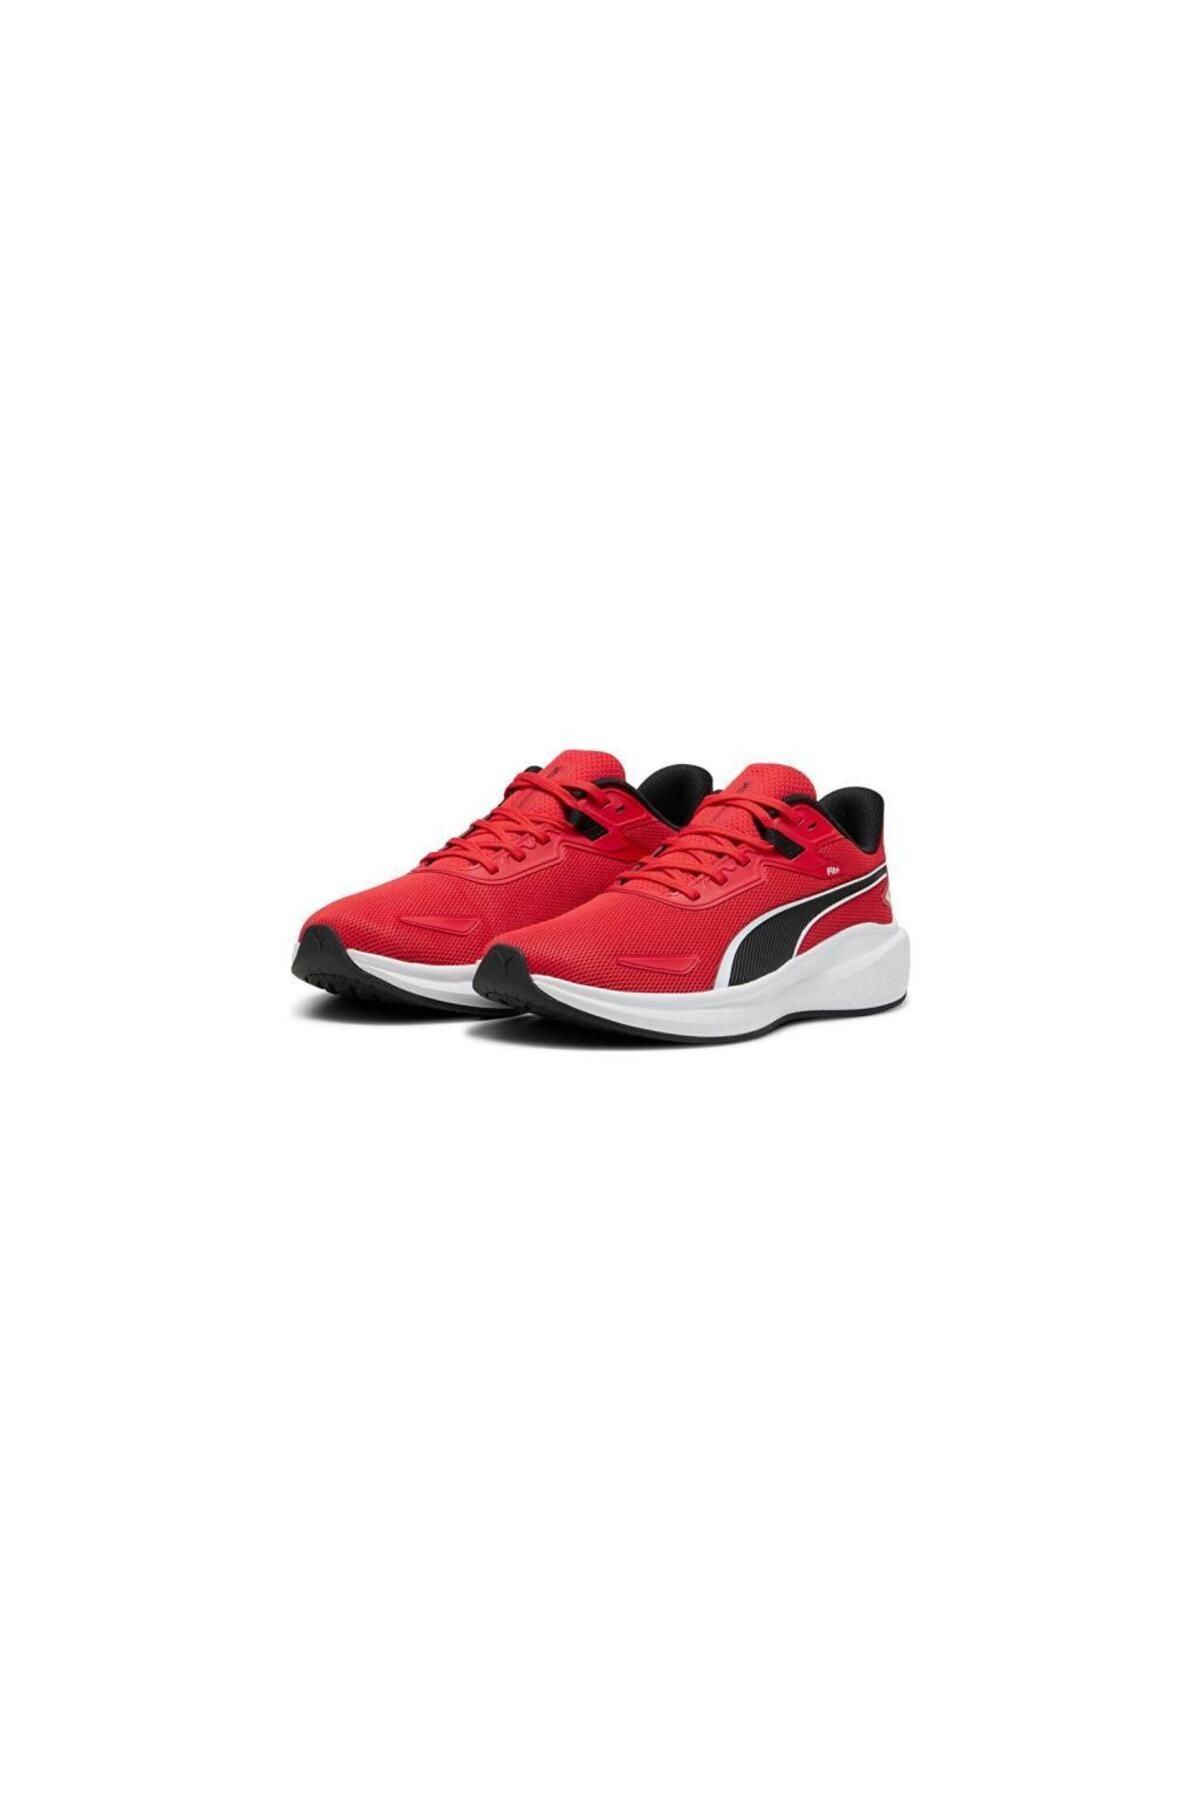 Puma Skyrocket 379437 Erkek Günlük Sneaker Spor Ayakkabı